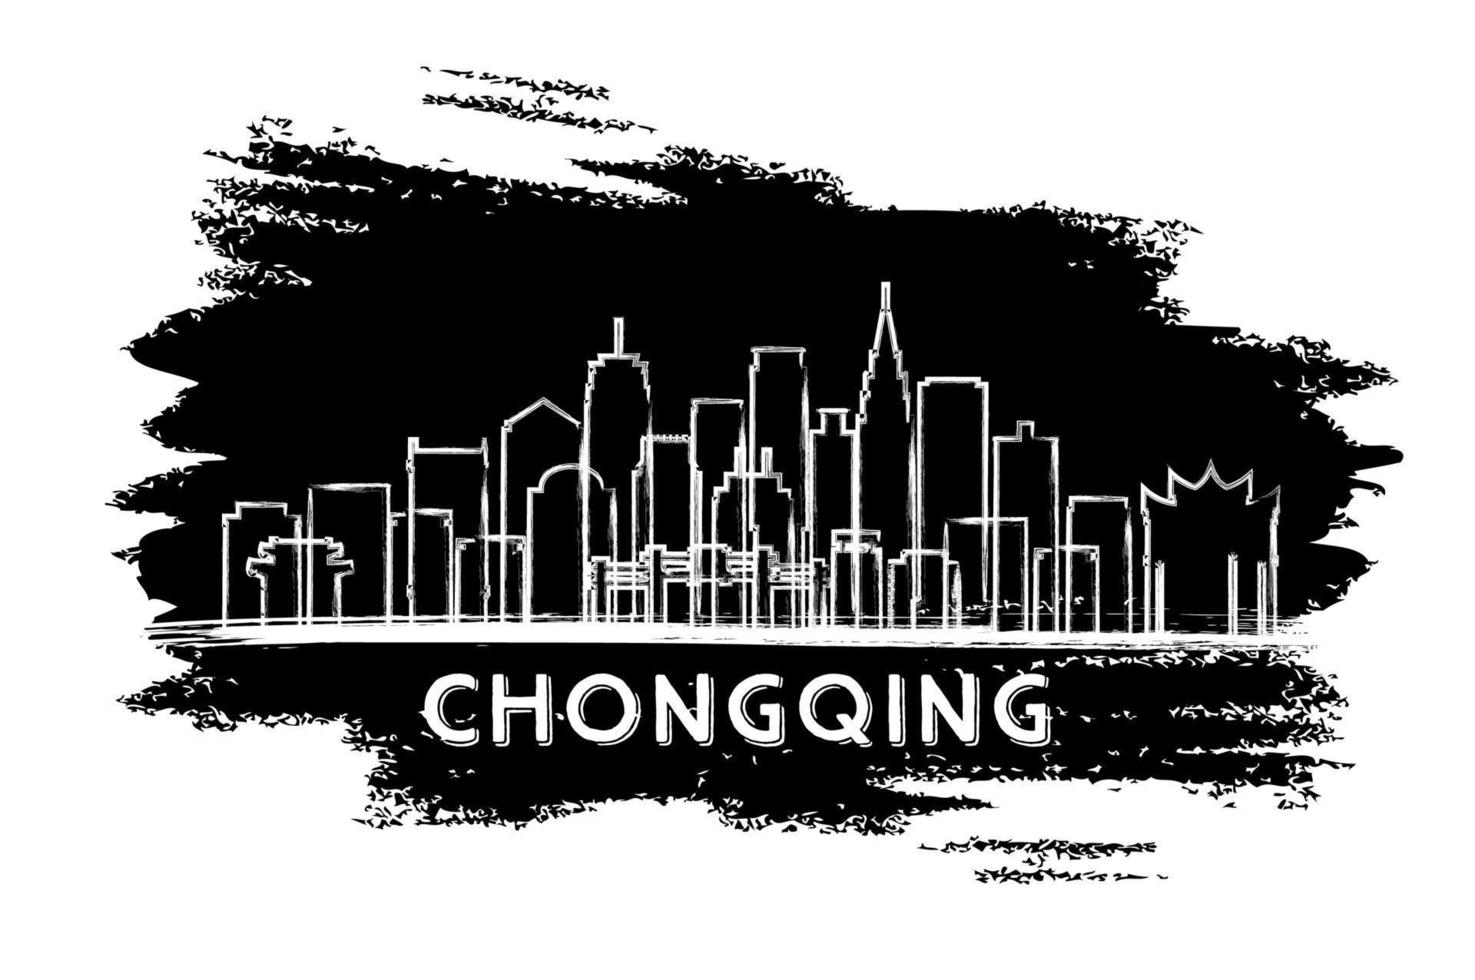 silueta del horizonte de la ciudad china de chongqing. boceto dibujado a mano. vector